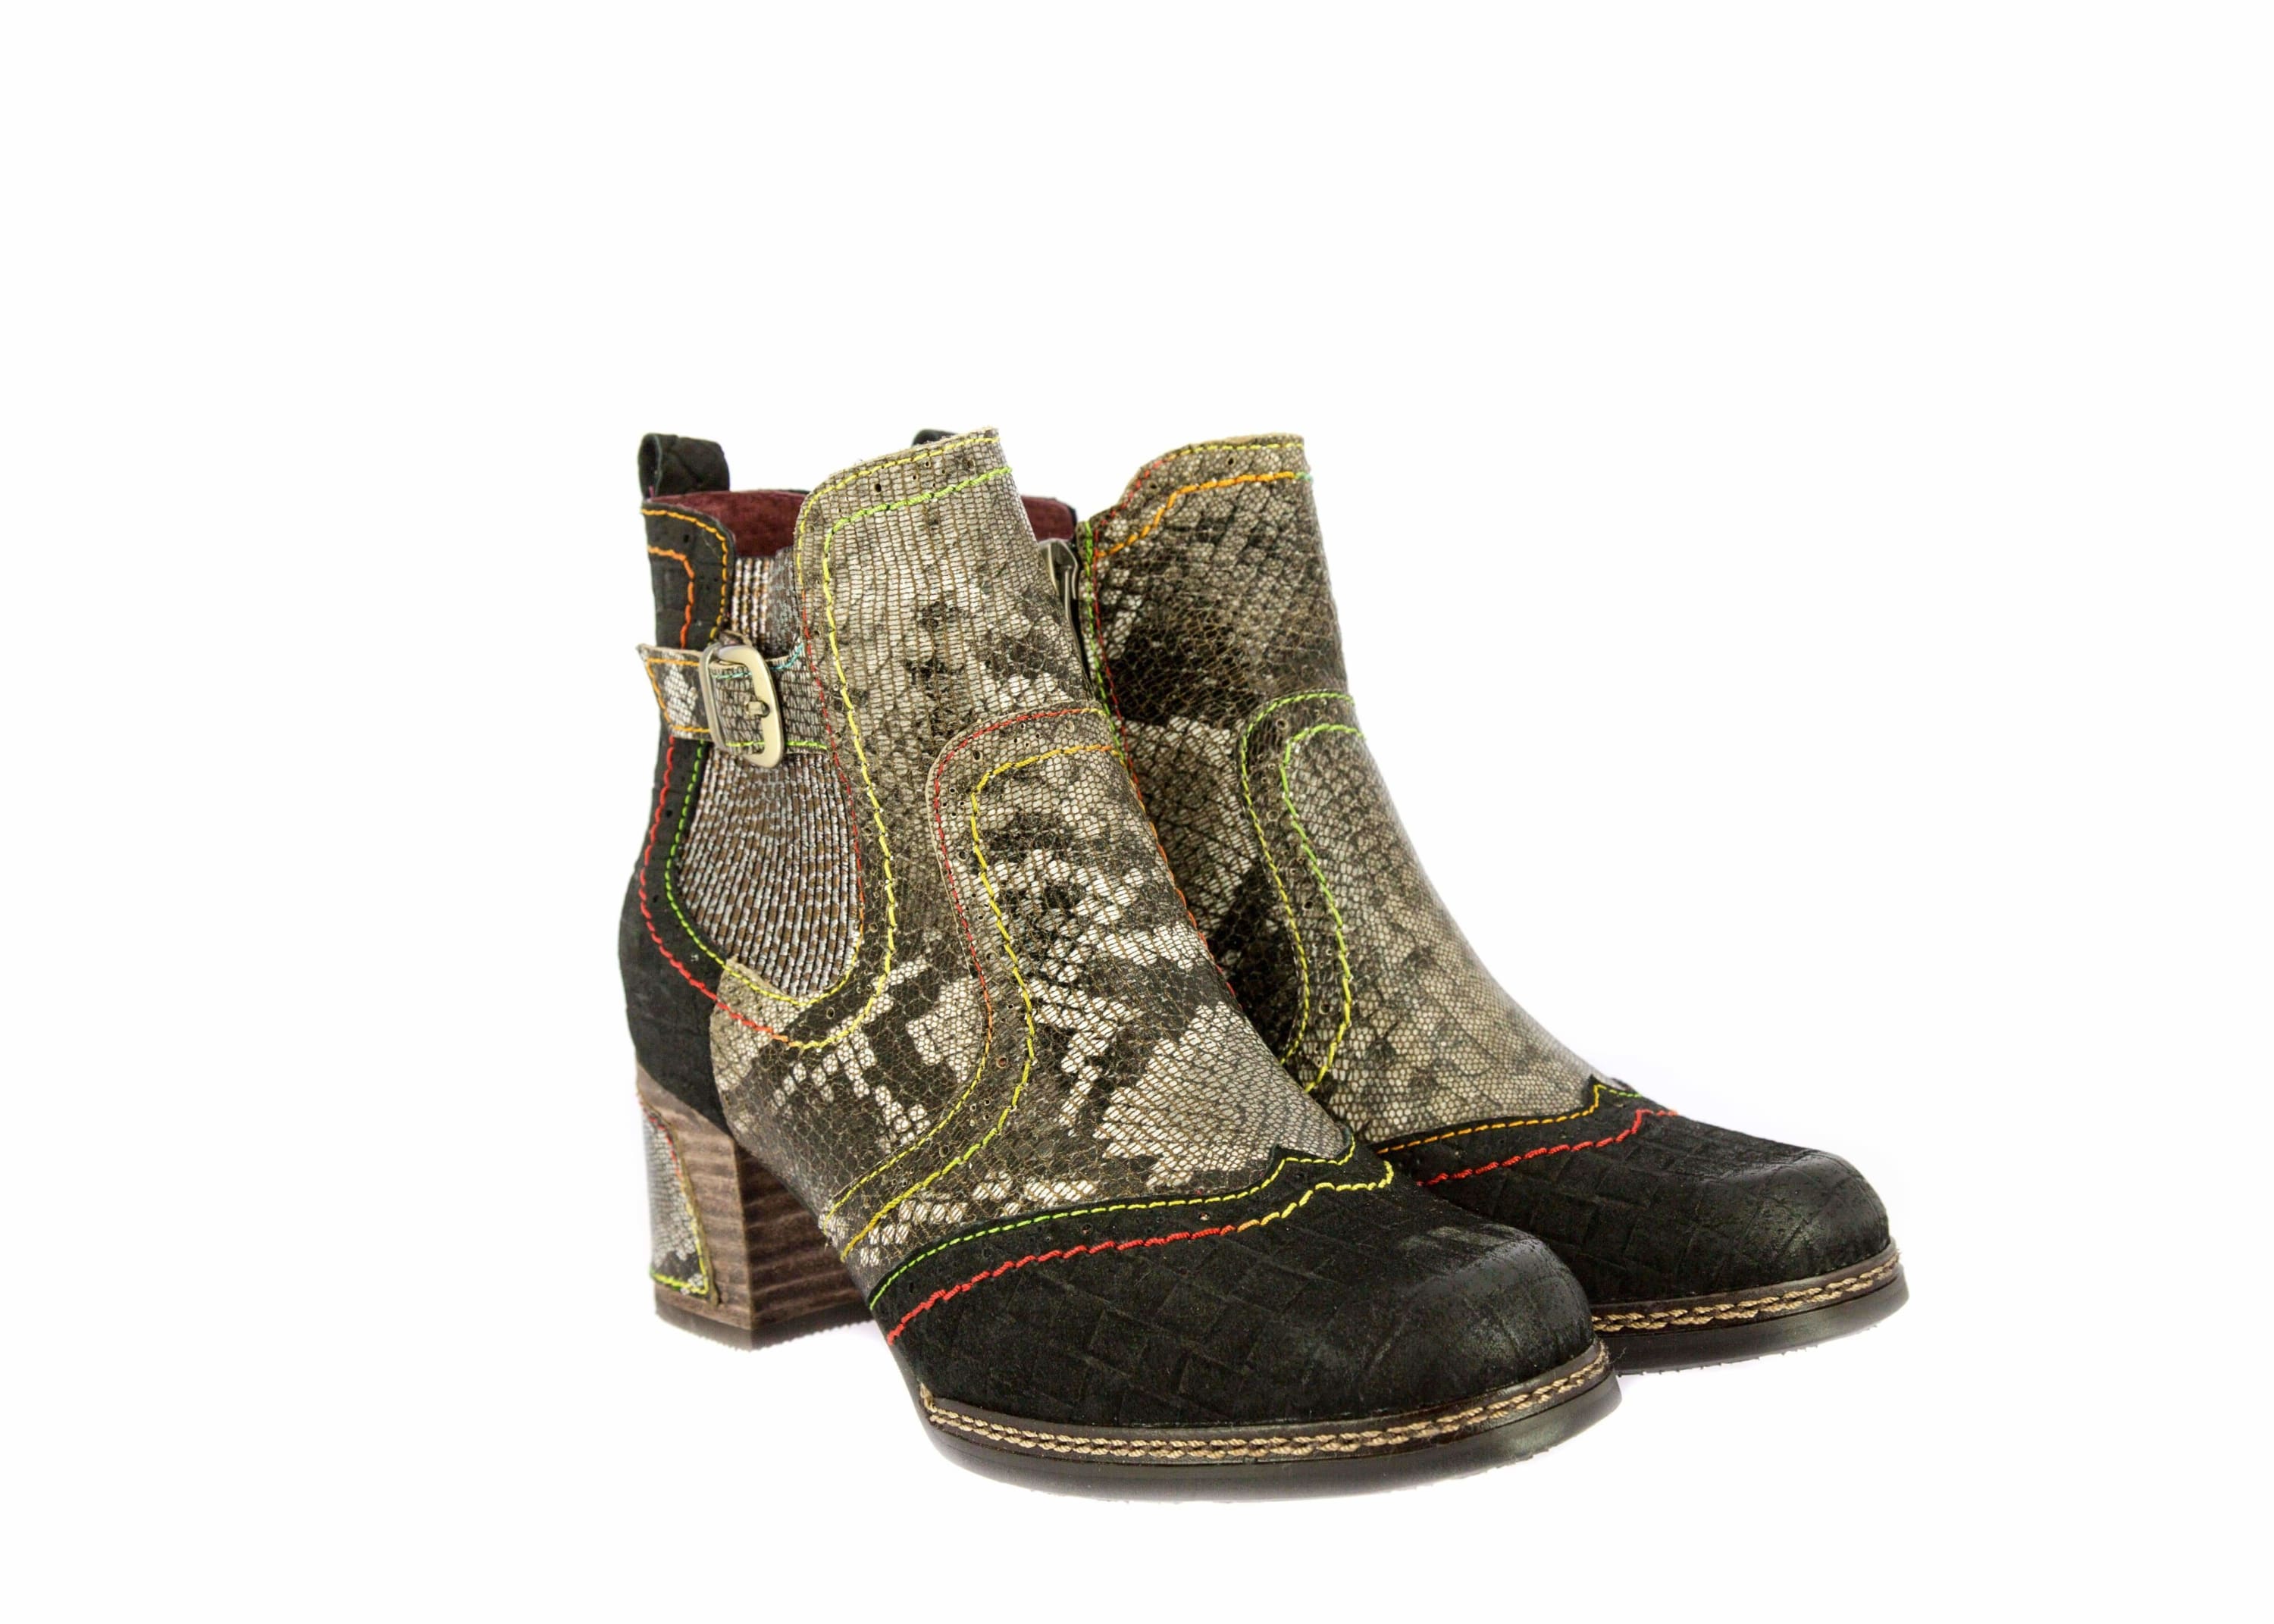 Shoe ELLA 02 - Boot